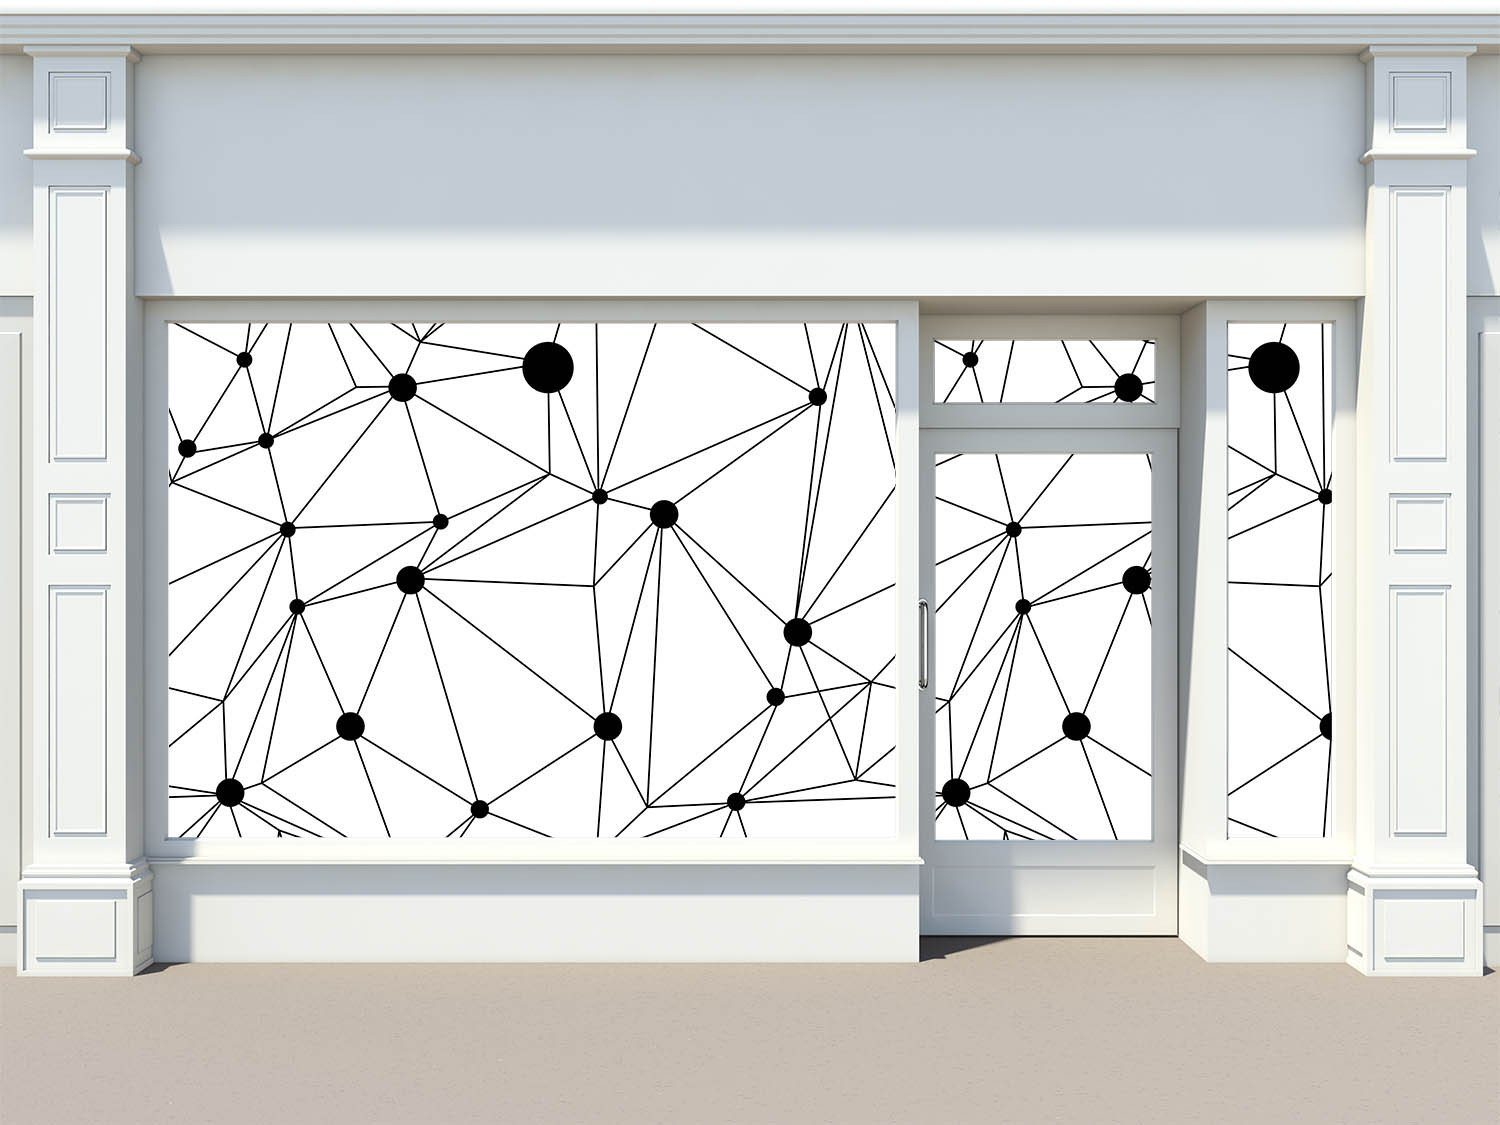 Connected Nodes Wallpaper AJ Wallpaper 